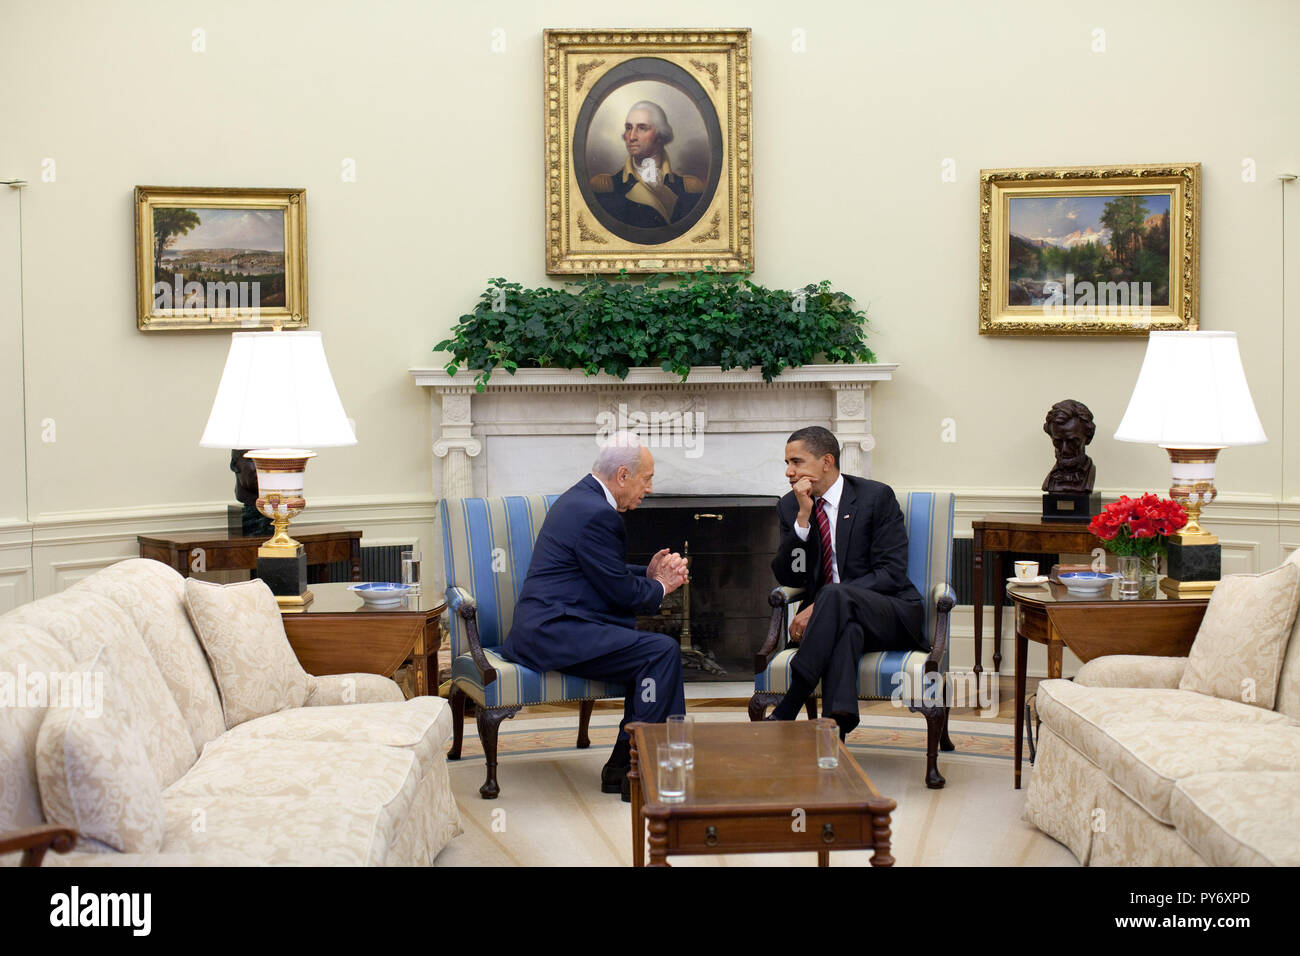 Präsident Barack Obama trifft sich mit israelischen Präsidenten Shimon Peres im Oval Office Dienstag, 5. Mai 2009.   Offiziellen White House Photo by Pete Souza Stockfoto